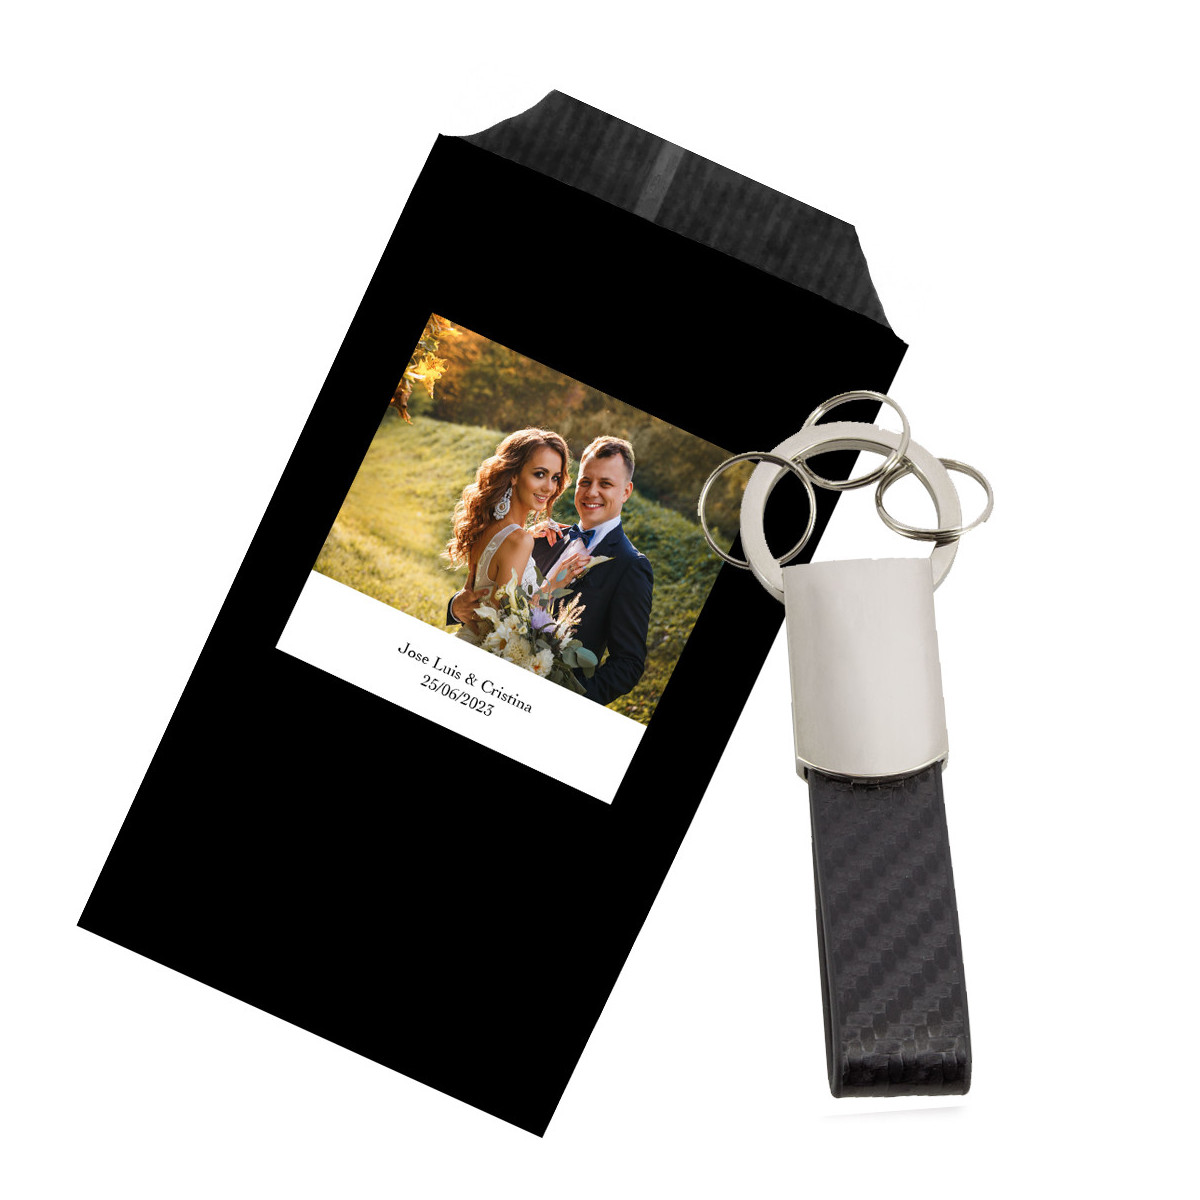 Porte clés avec divers porte clés avec présentation cadeau et autocollant photo de mariage